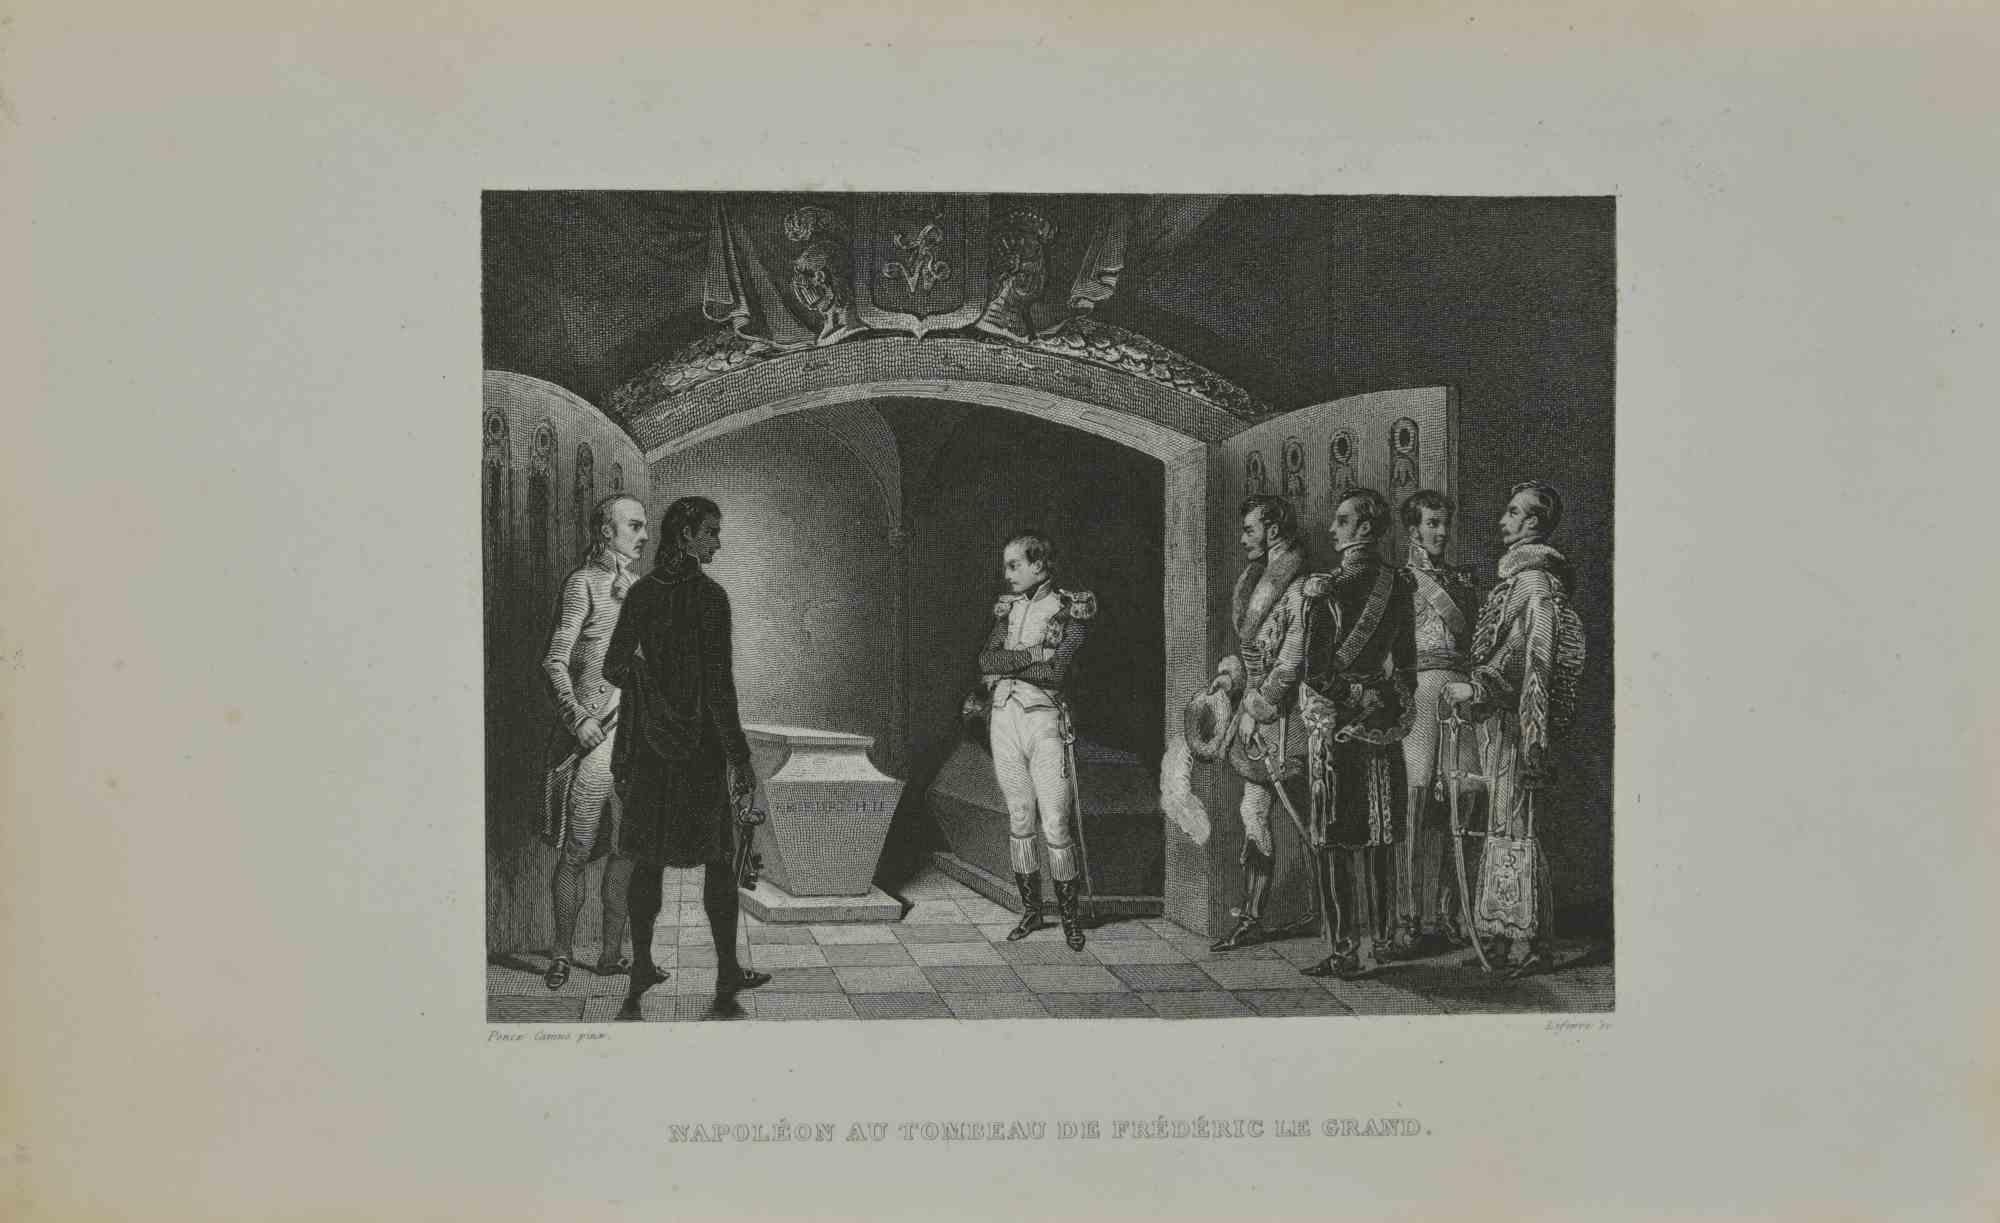  Marie-Nicolas Ponce-Camus Figurative Print - Napoléon au Tombeu de Frédéric Le Grand - Etching - 1837